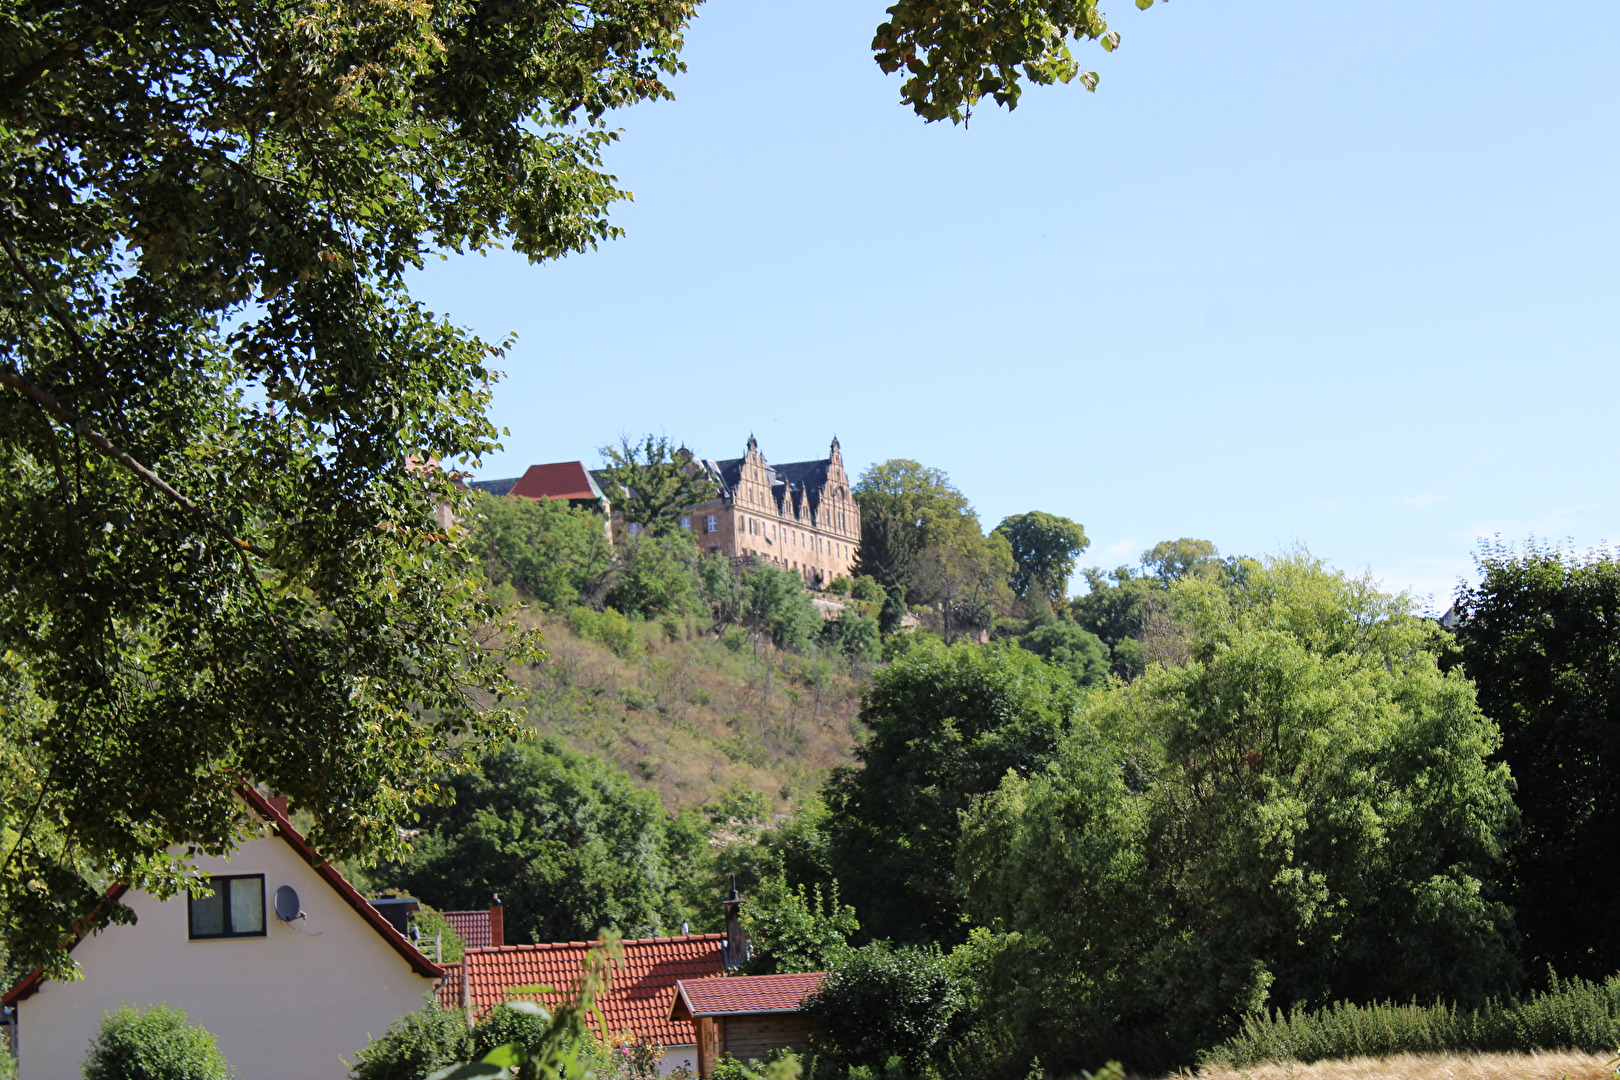 Schloss Vitzenburg von der Straßenseite gesehen